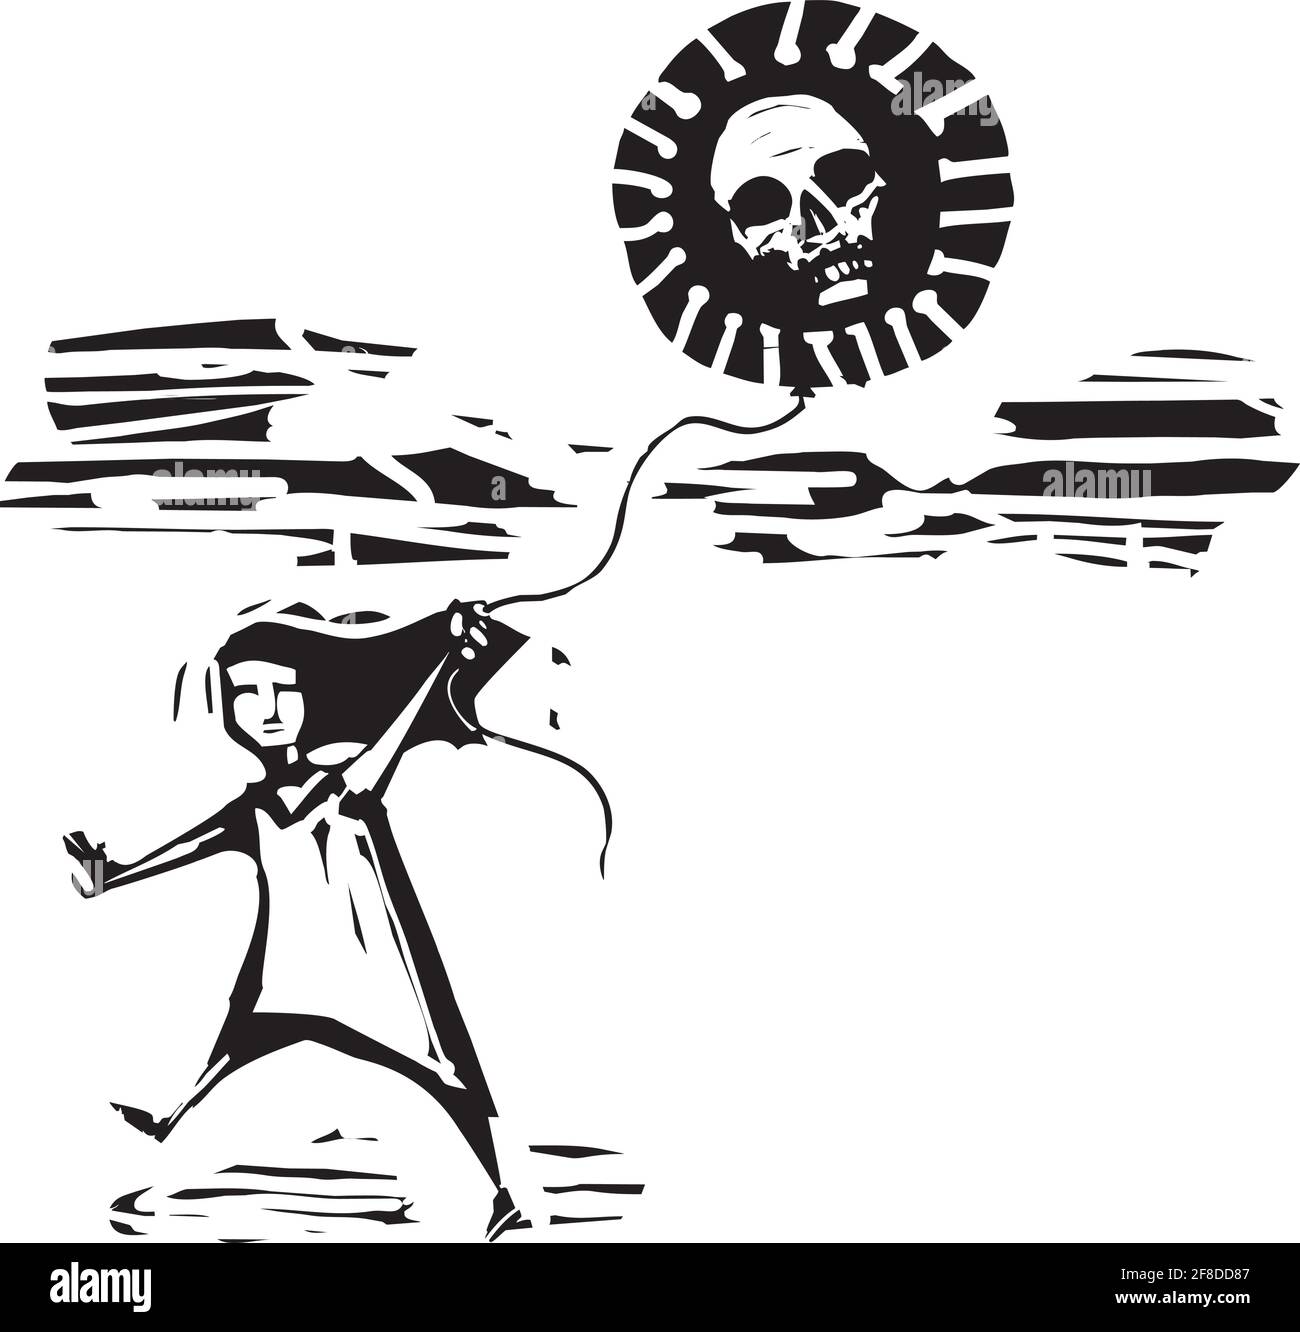 Image de style expressionniste de coupe de bois d'une fille qui court avec du covid ballon de virus avec un crâne à l'intérieur Illustration de Vecteur